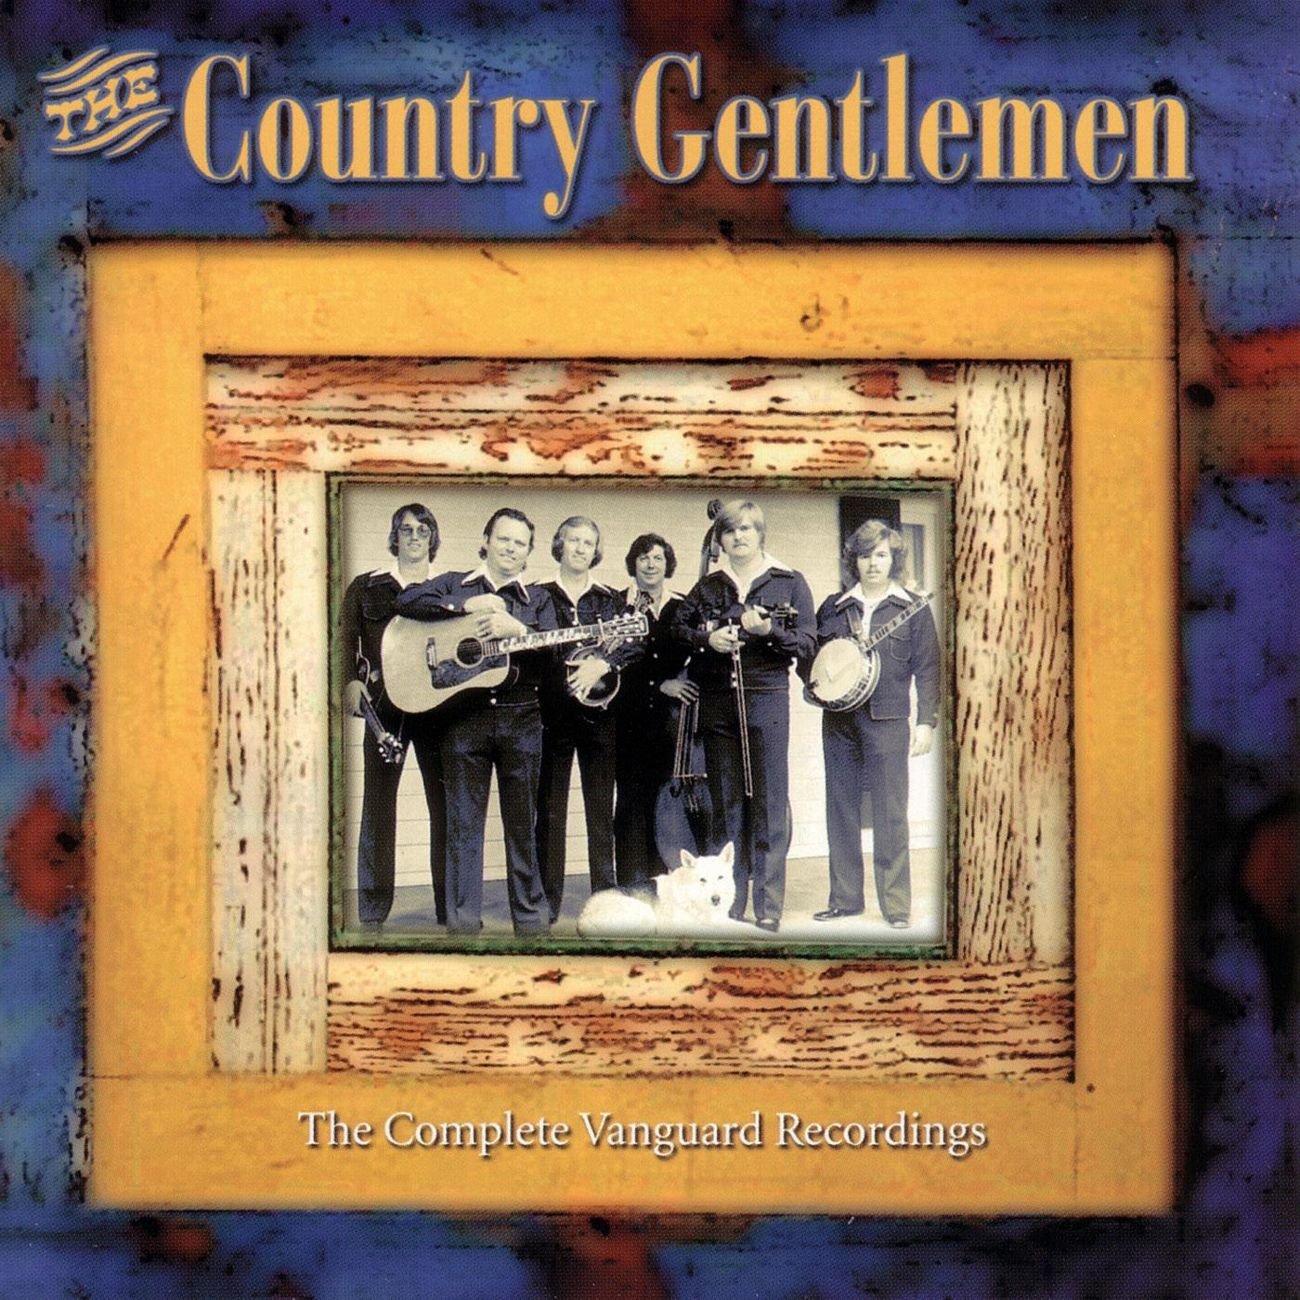 Country gentlemen. Country Gentleman. Gentlemen Country 2. The complete Vanguard recordings - Volume 6 - cd2 (2008). Gentleman - 2002 - Journey to Jah.